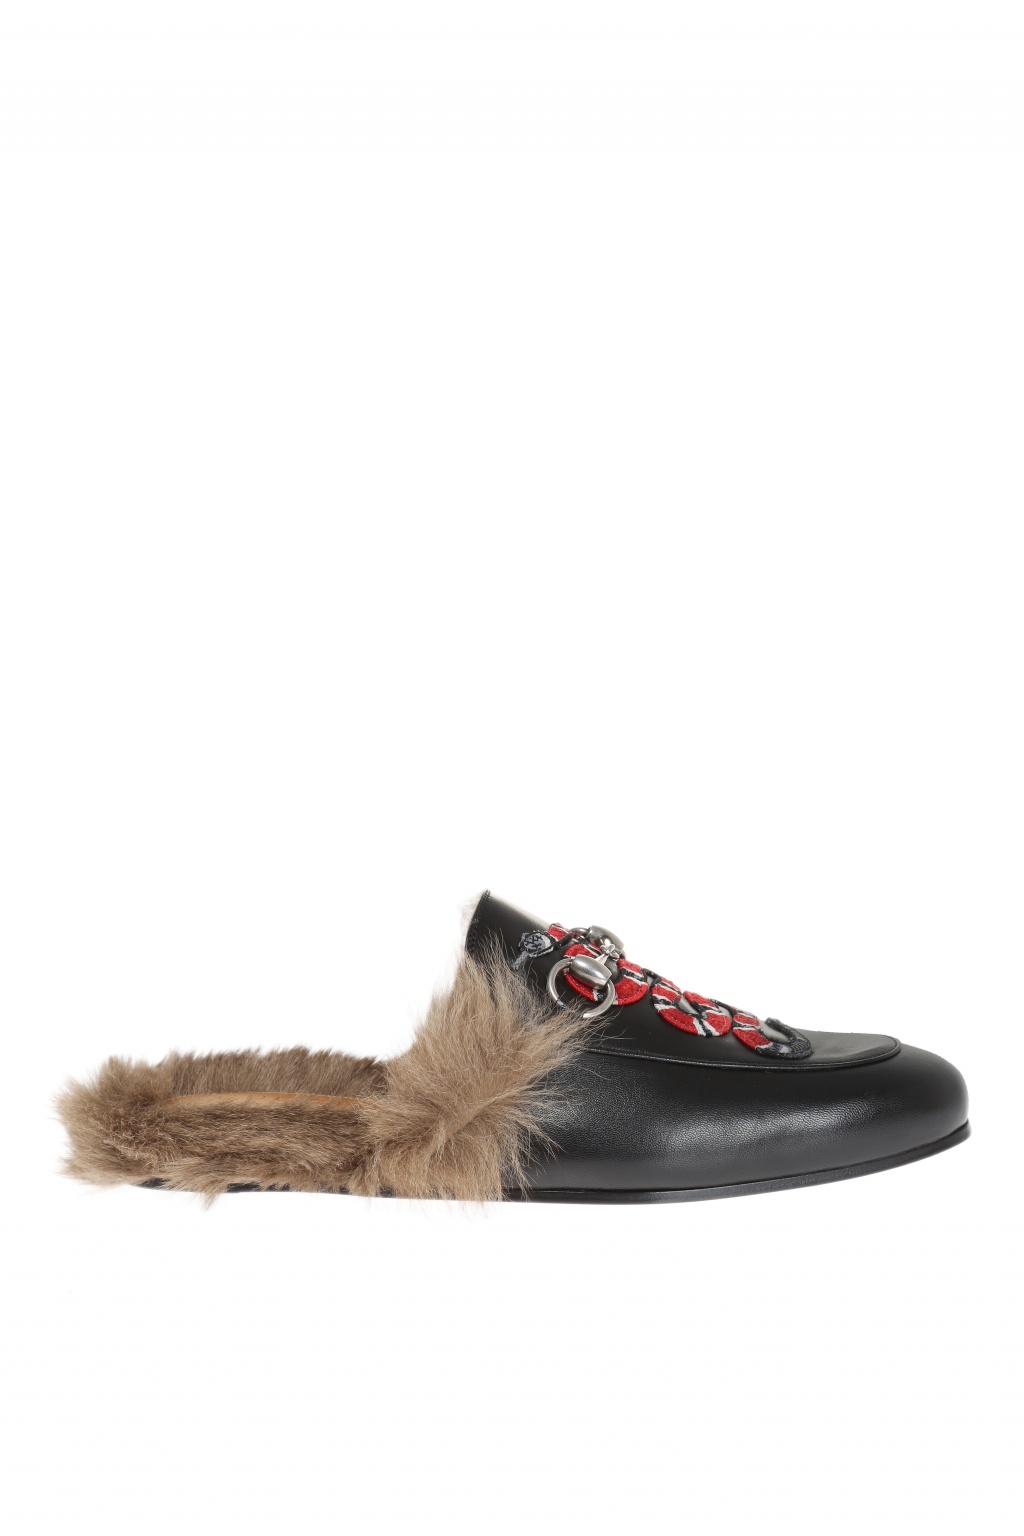 Underinddel Sikker Finde på Gucci 'Princetown' snake applique slippers | Men's Shoes | Vitkac